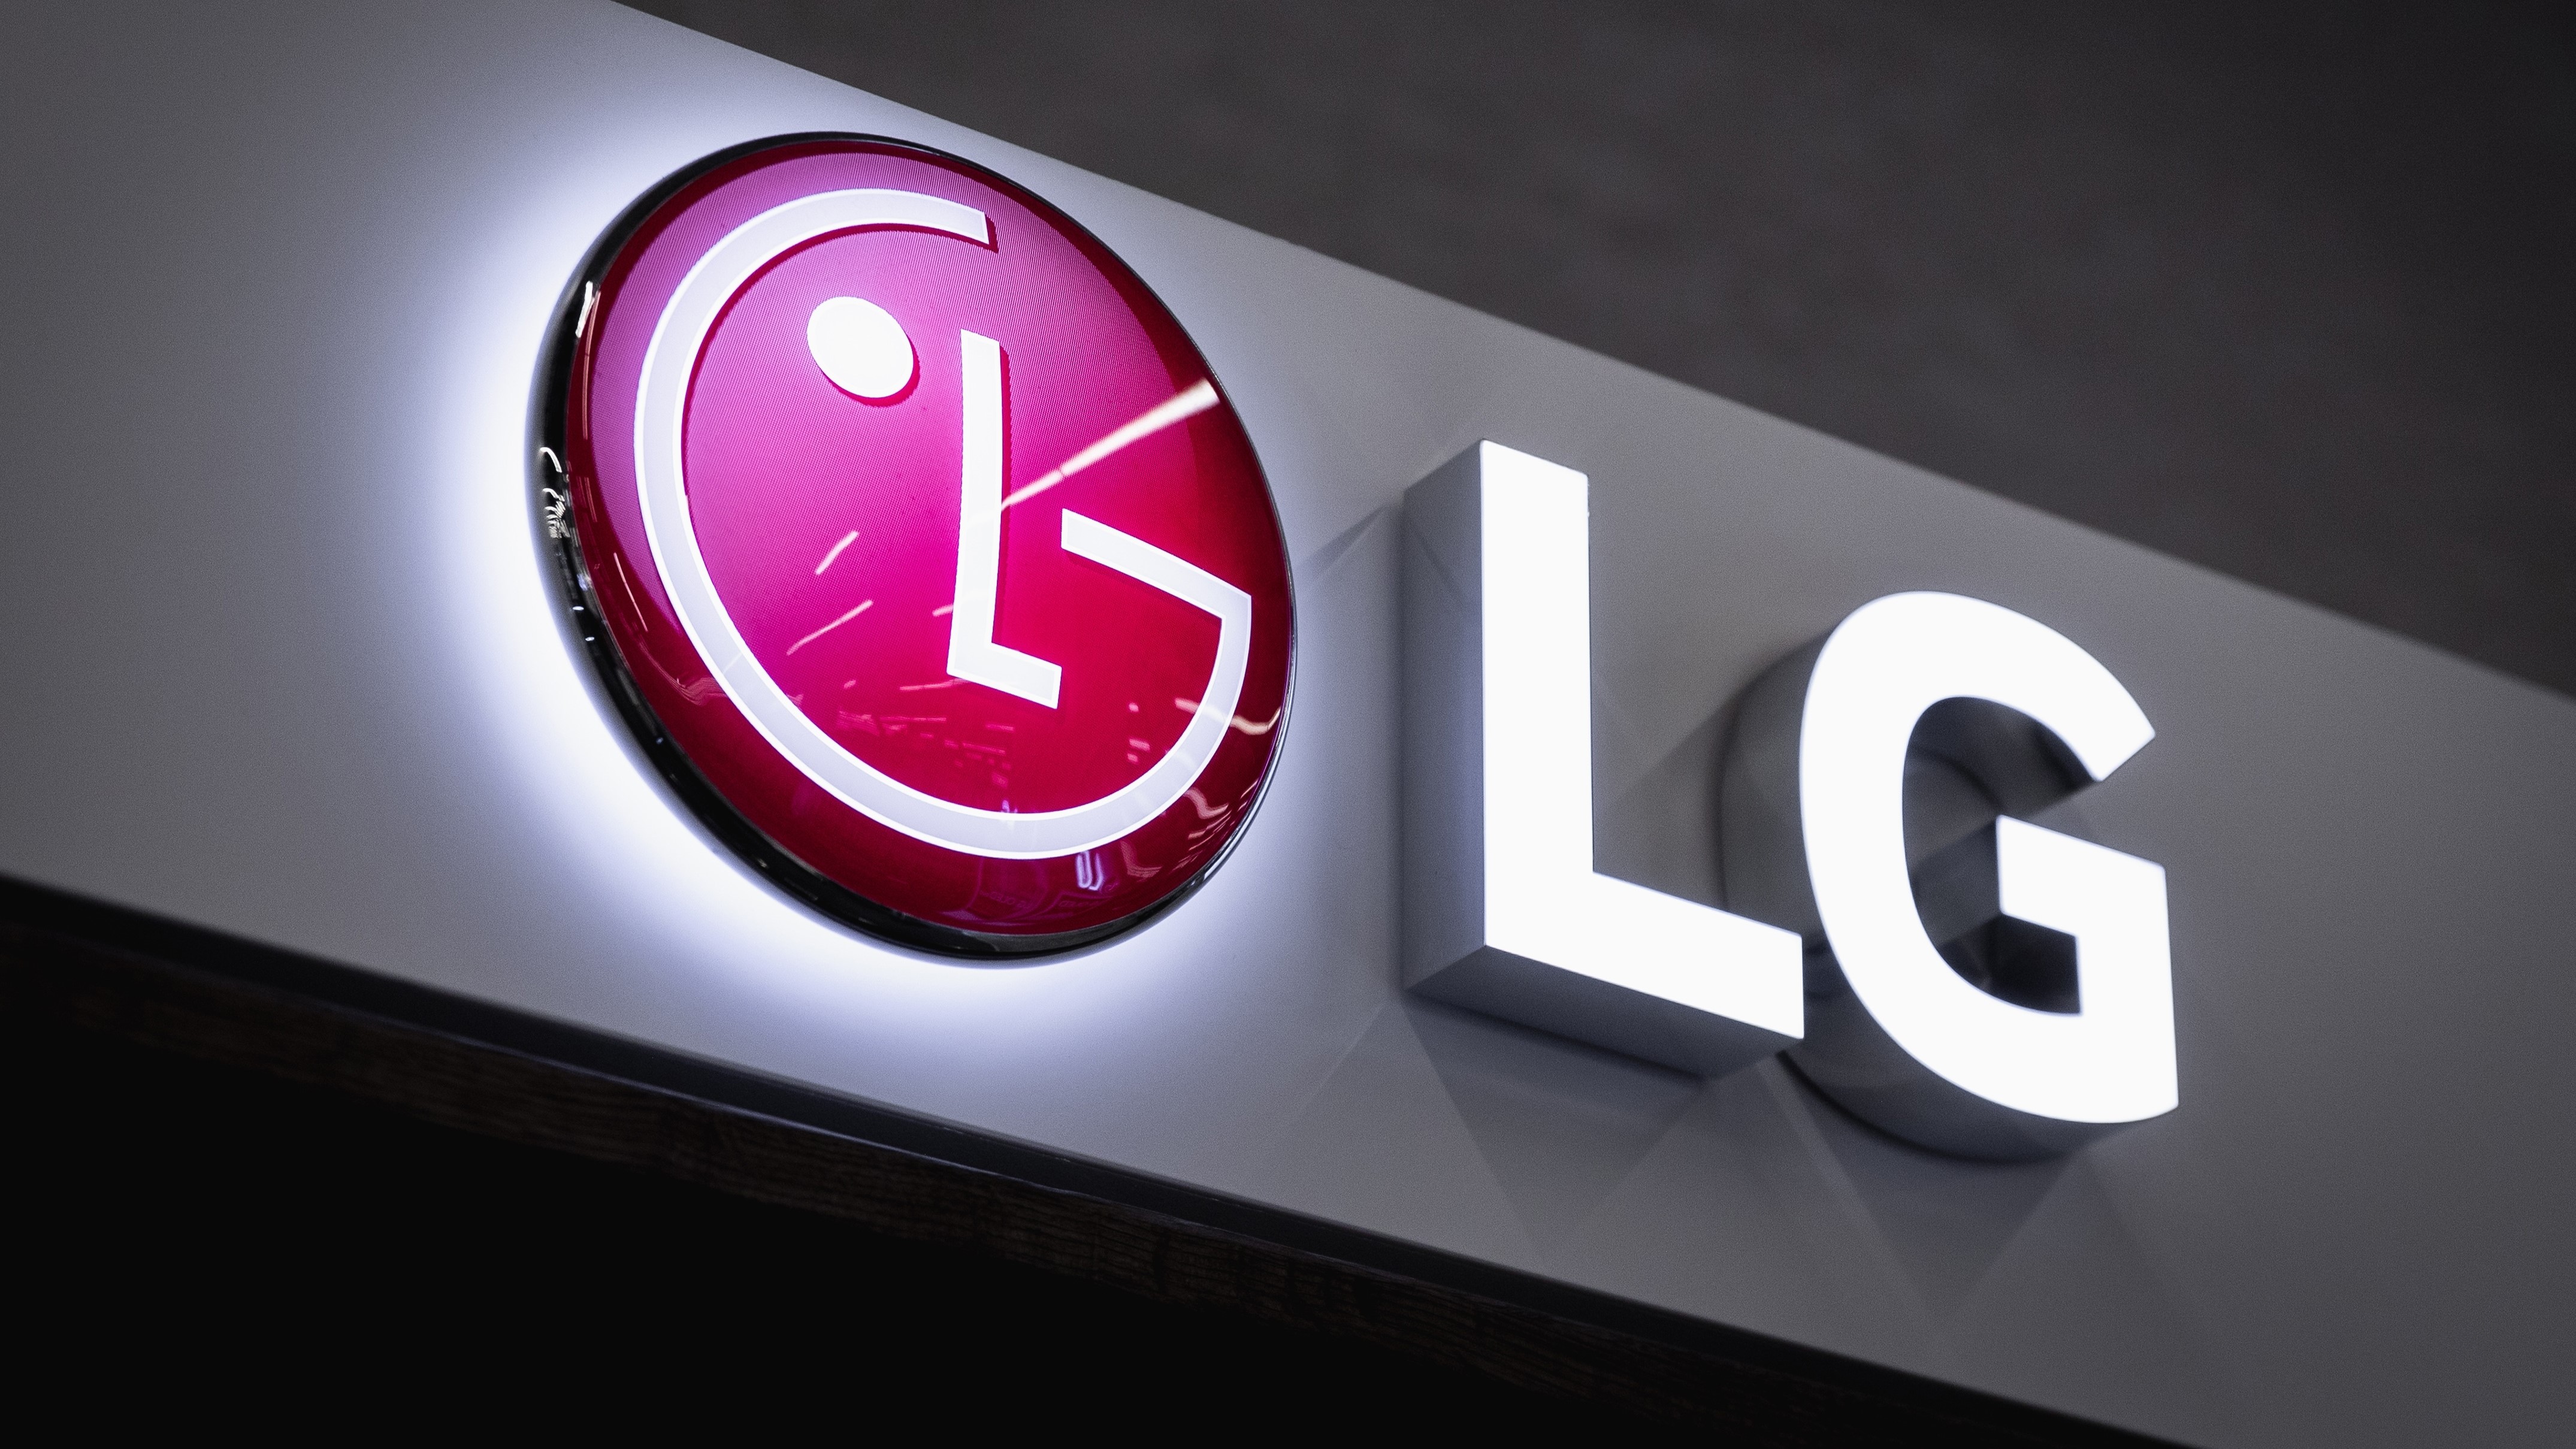 LG переносит свой опыт в области OLED-телевидения в гарнитуру XR, и это может стать темной лошадкой